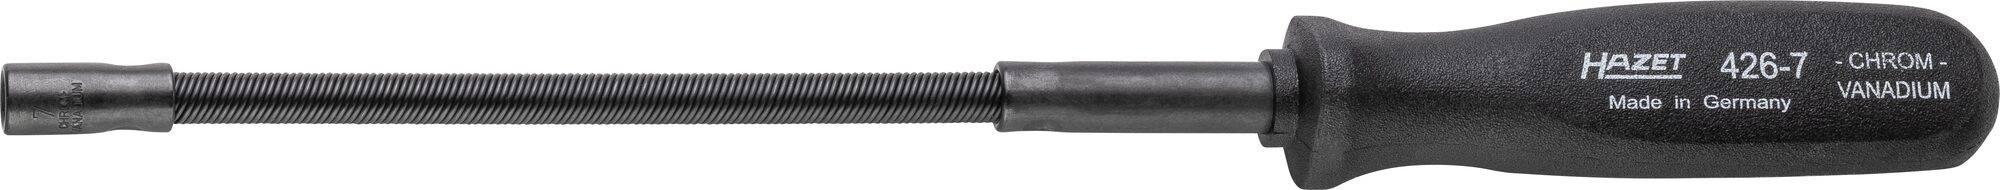 HAZET Steckschlüssel · flexibel 426-7 · Außen Sechskant Profil · 7 mm